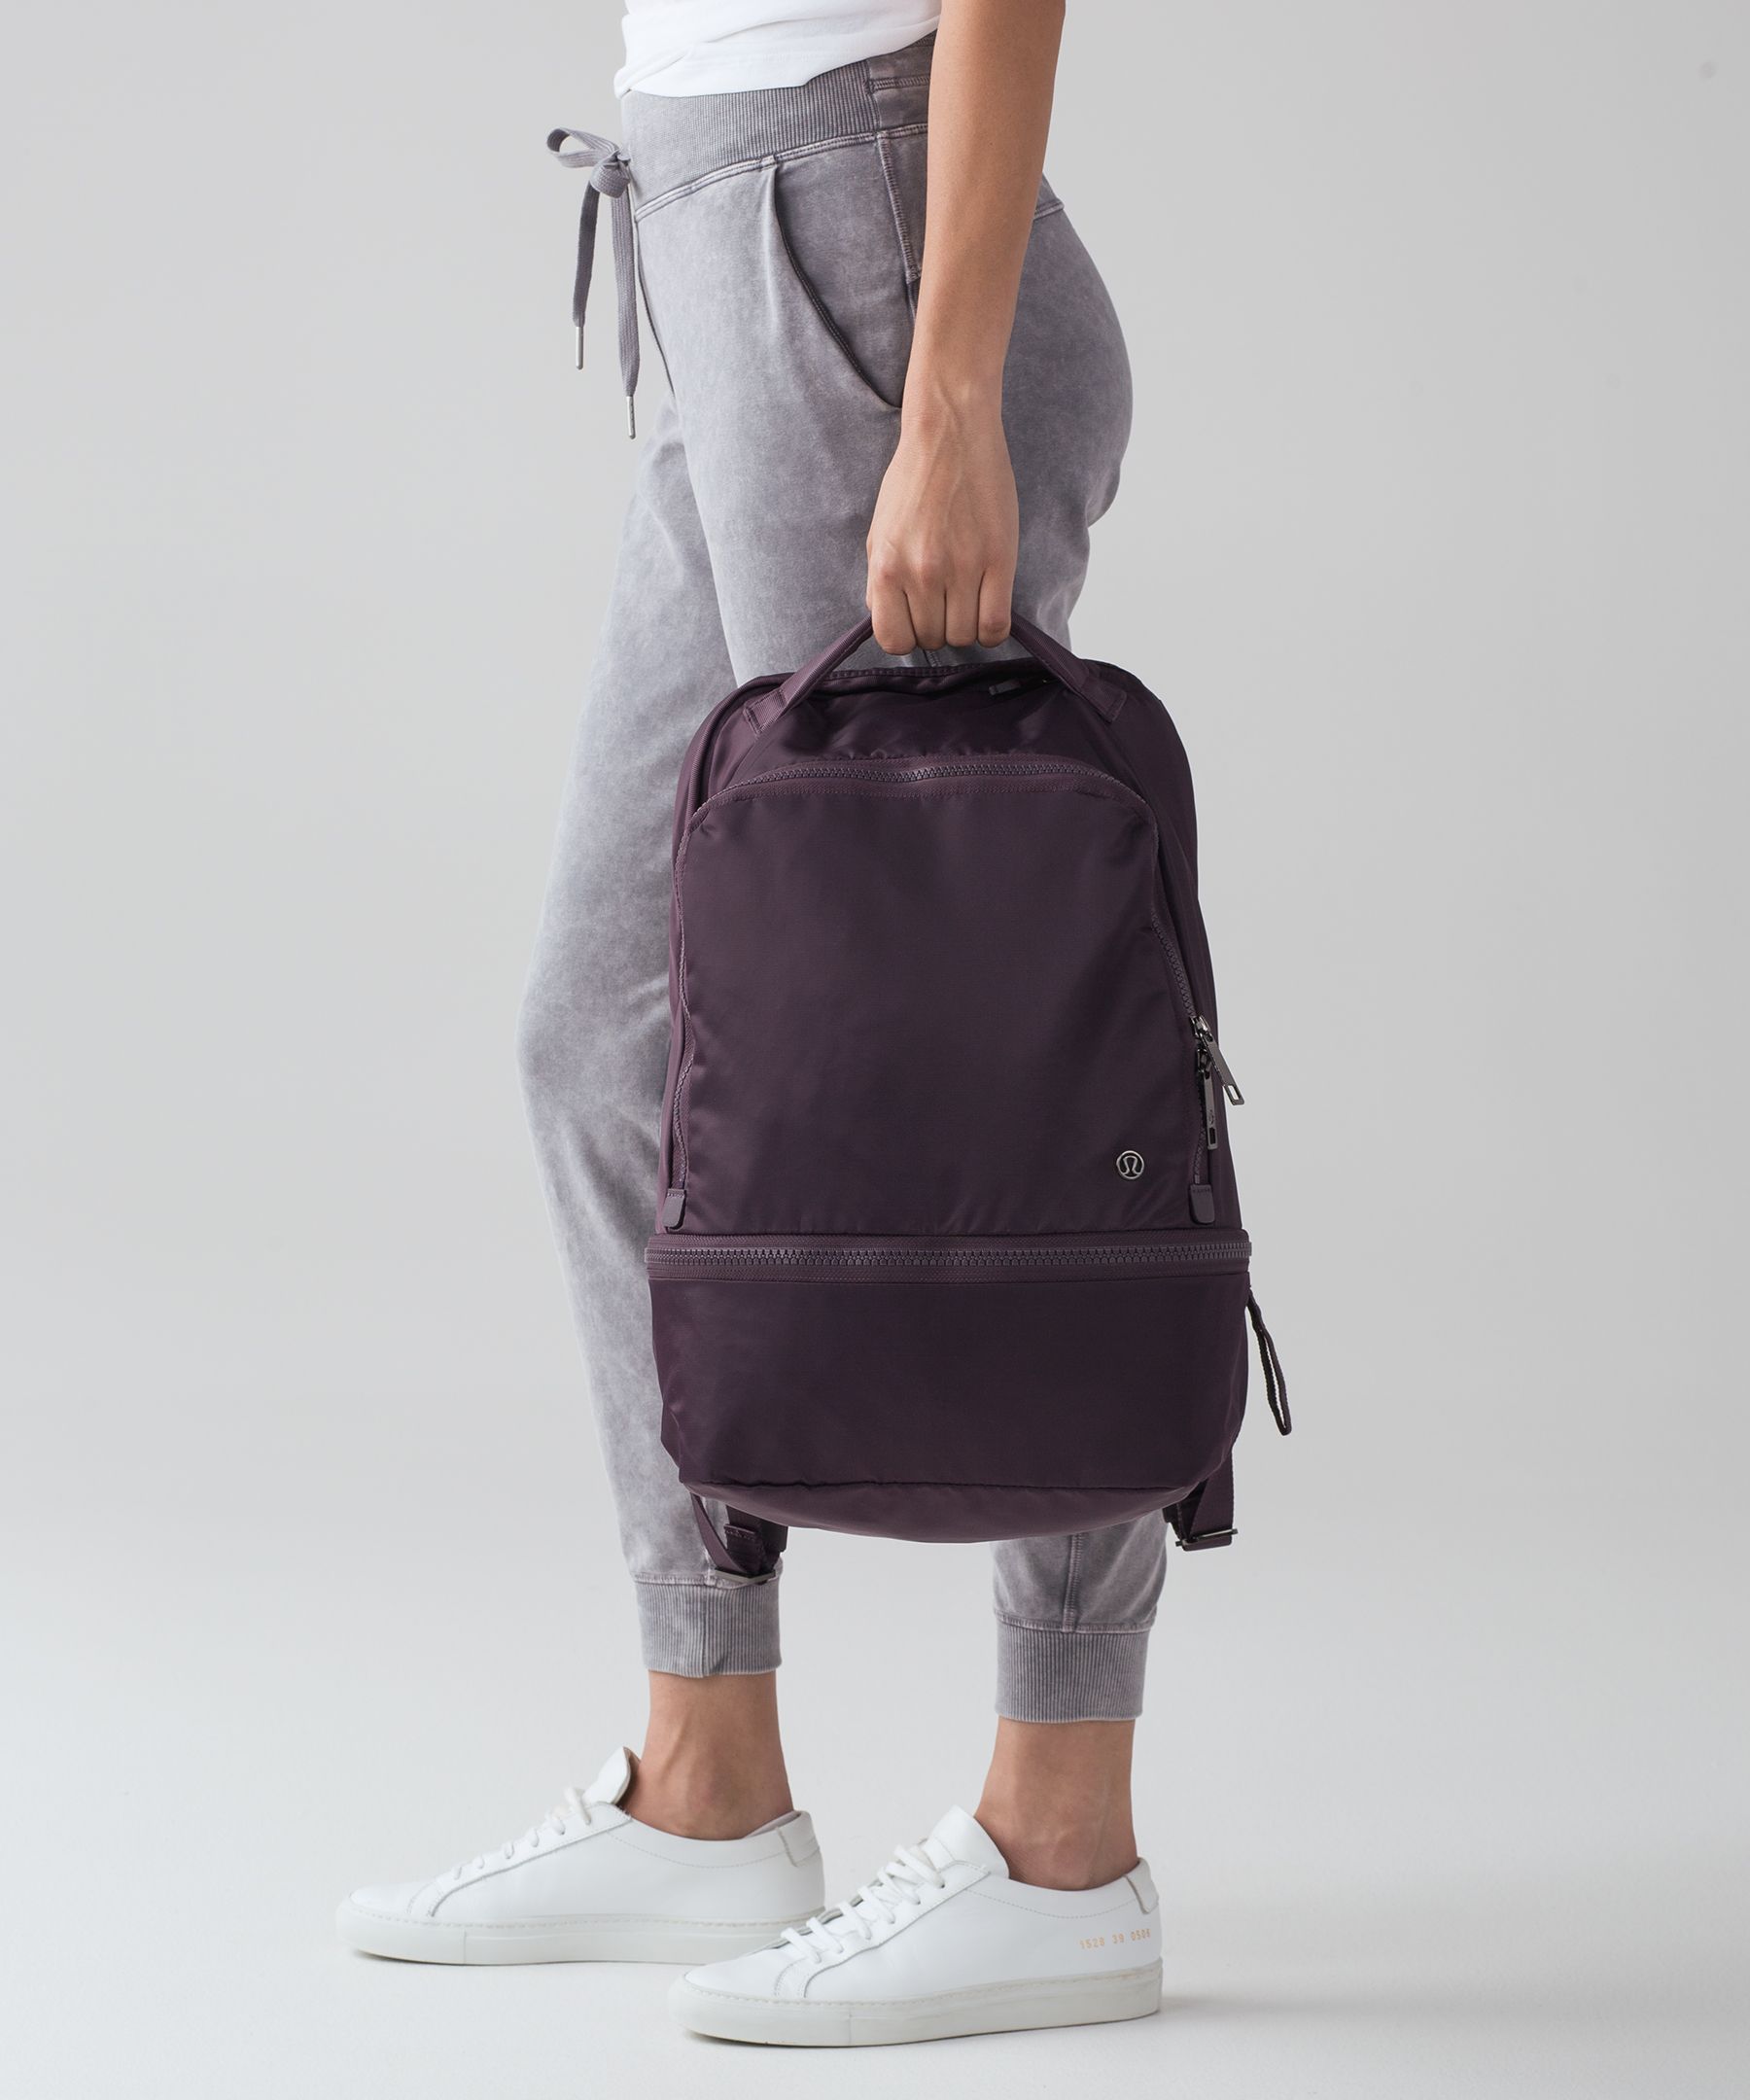 lululemon city adventurer backpack 24l